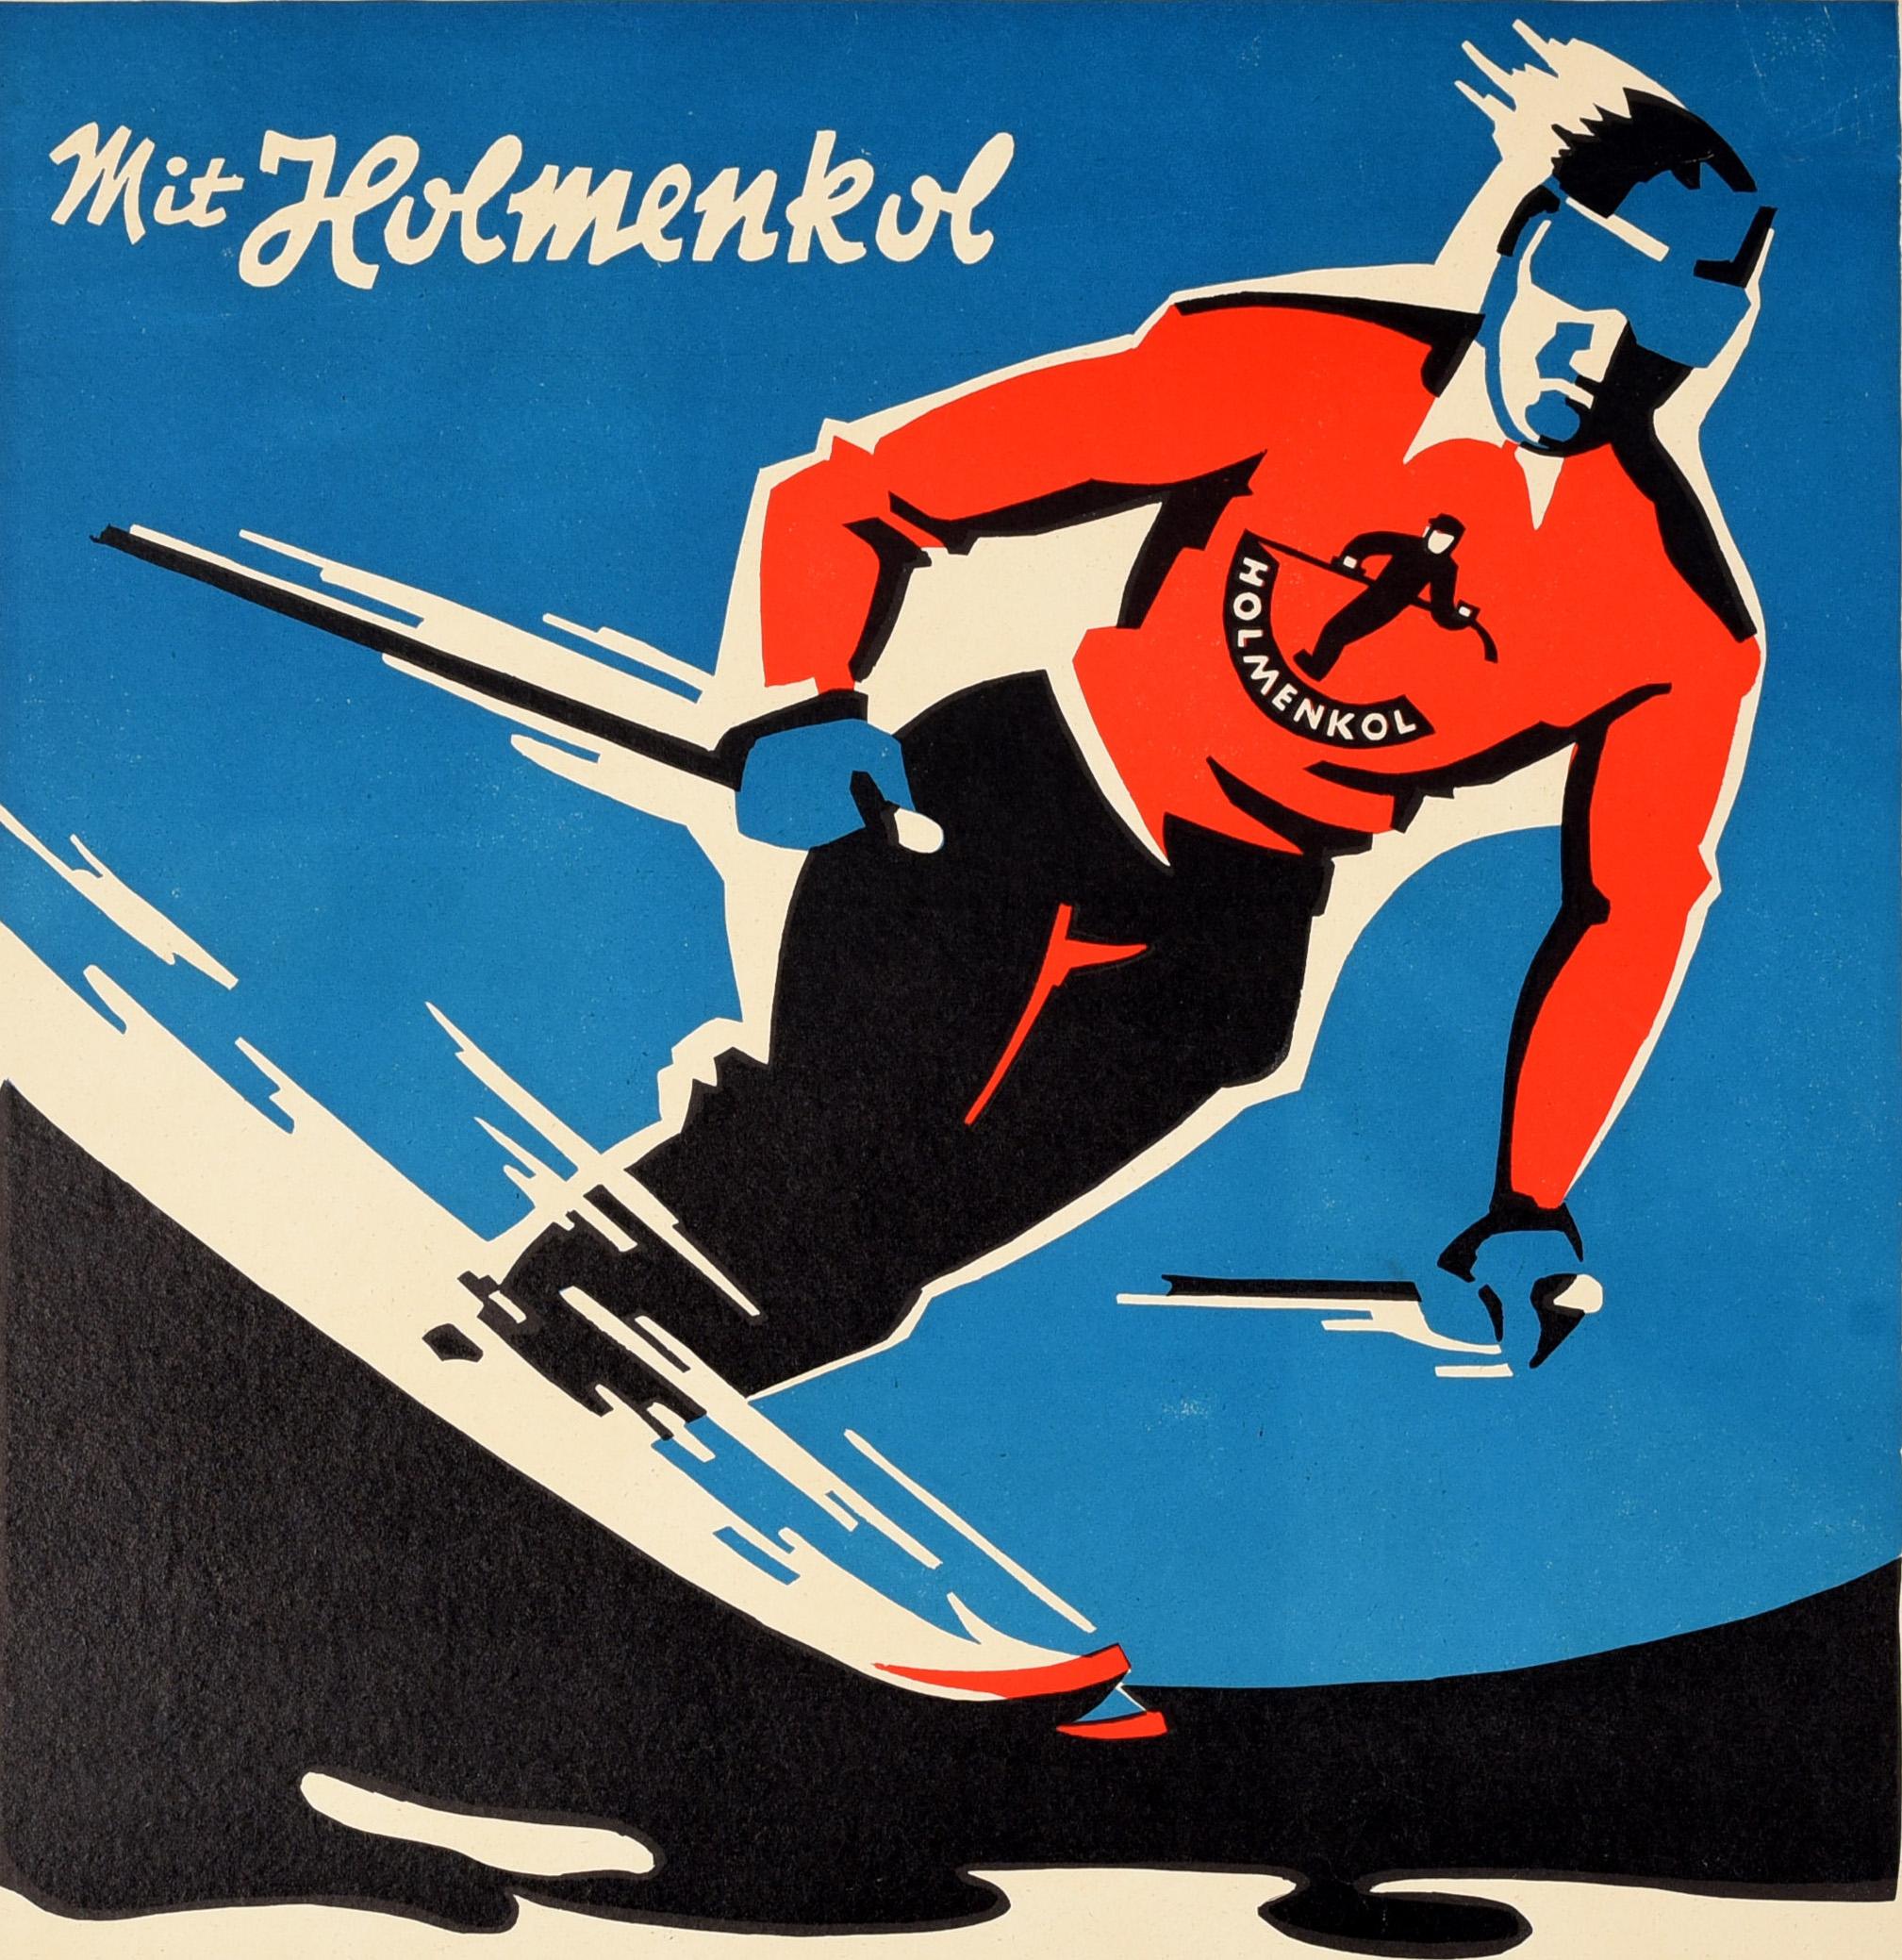 Original-Werbeplakat für Skiwachs - Mit Holmenkol / With Holmenkol - mit einer dynamischen Illustration eines Skifahrers, der einen Abhang mit hoher Geschwindigkeit hinunterfährt, mit dem Markenlogo (einem Bild eines Mannes und dem Text Holmenkol)